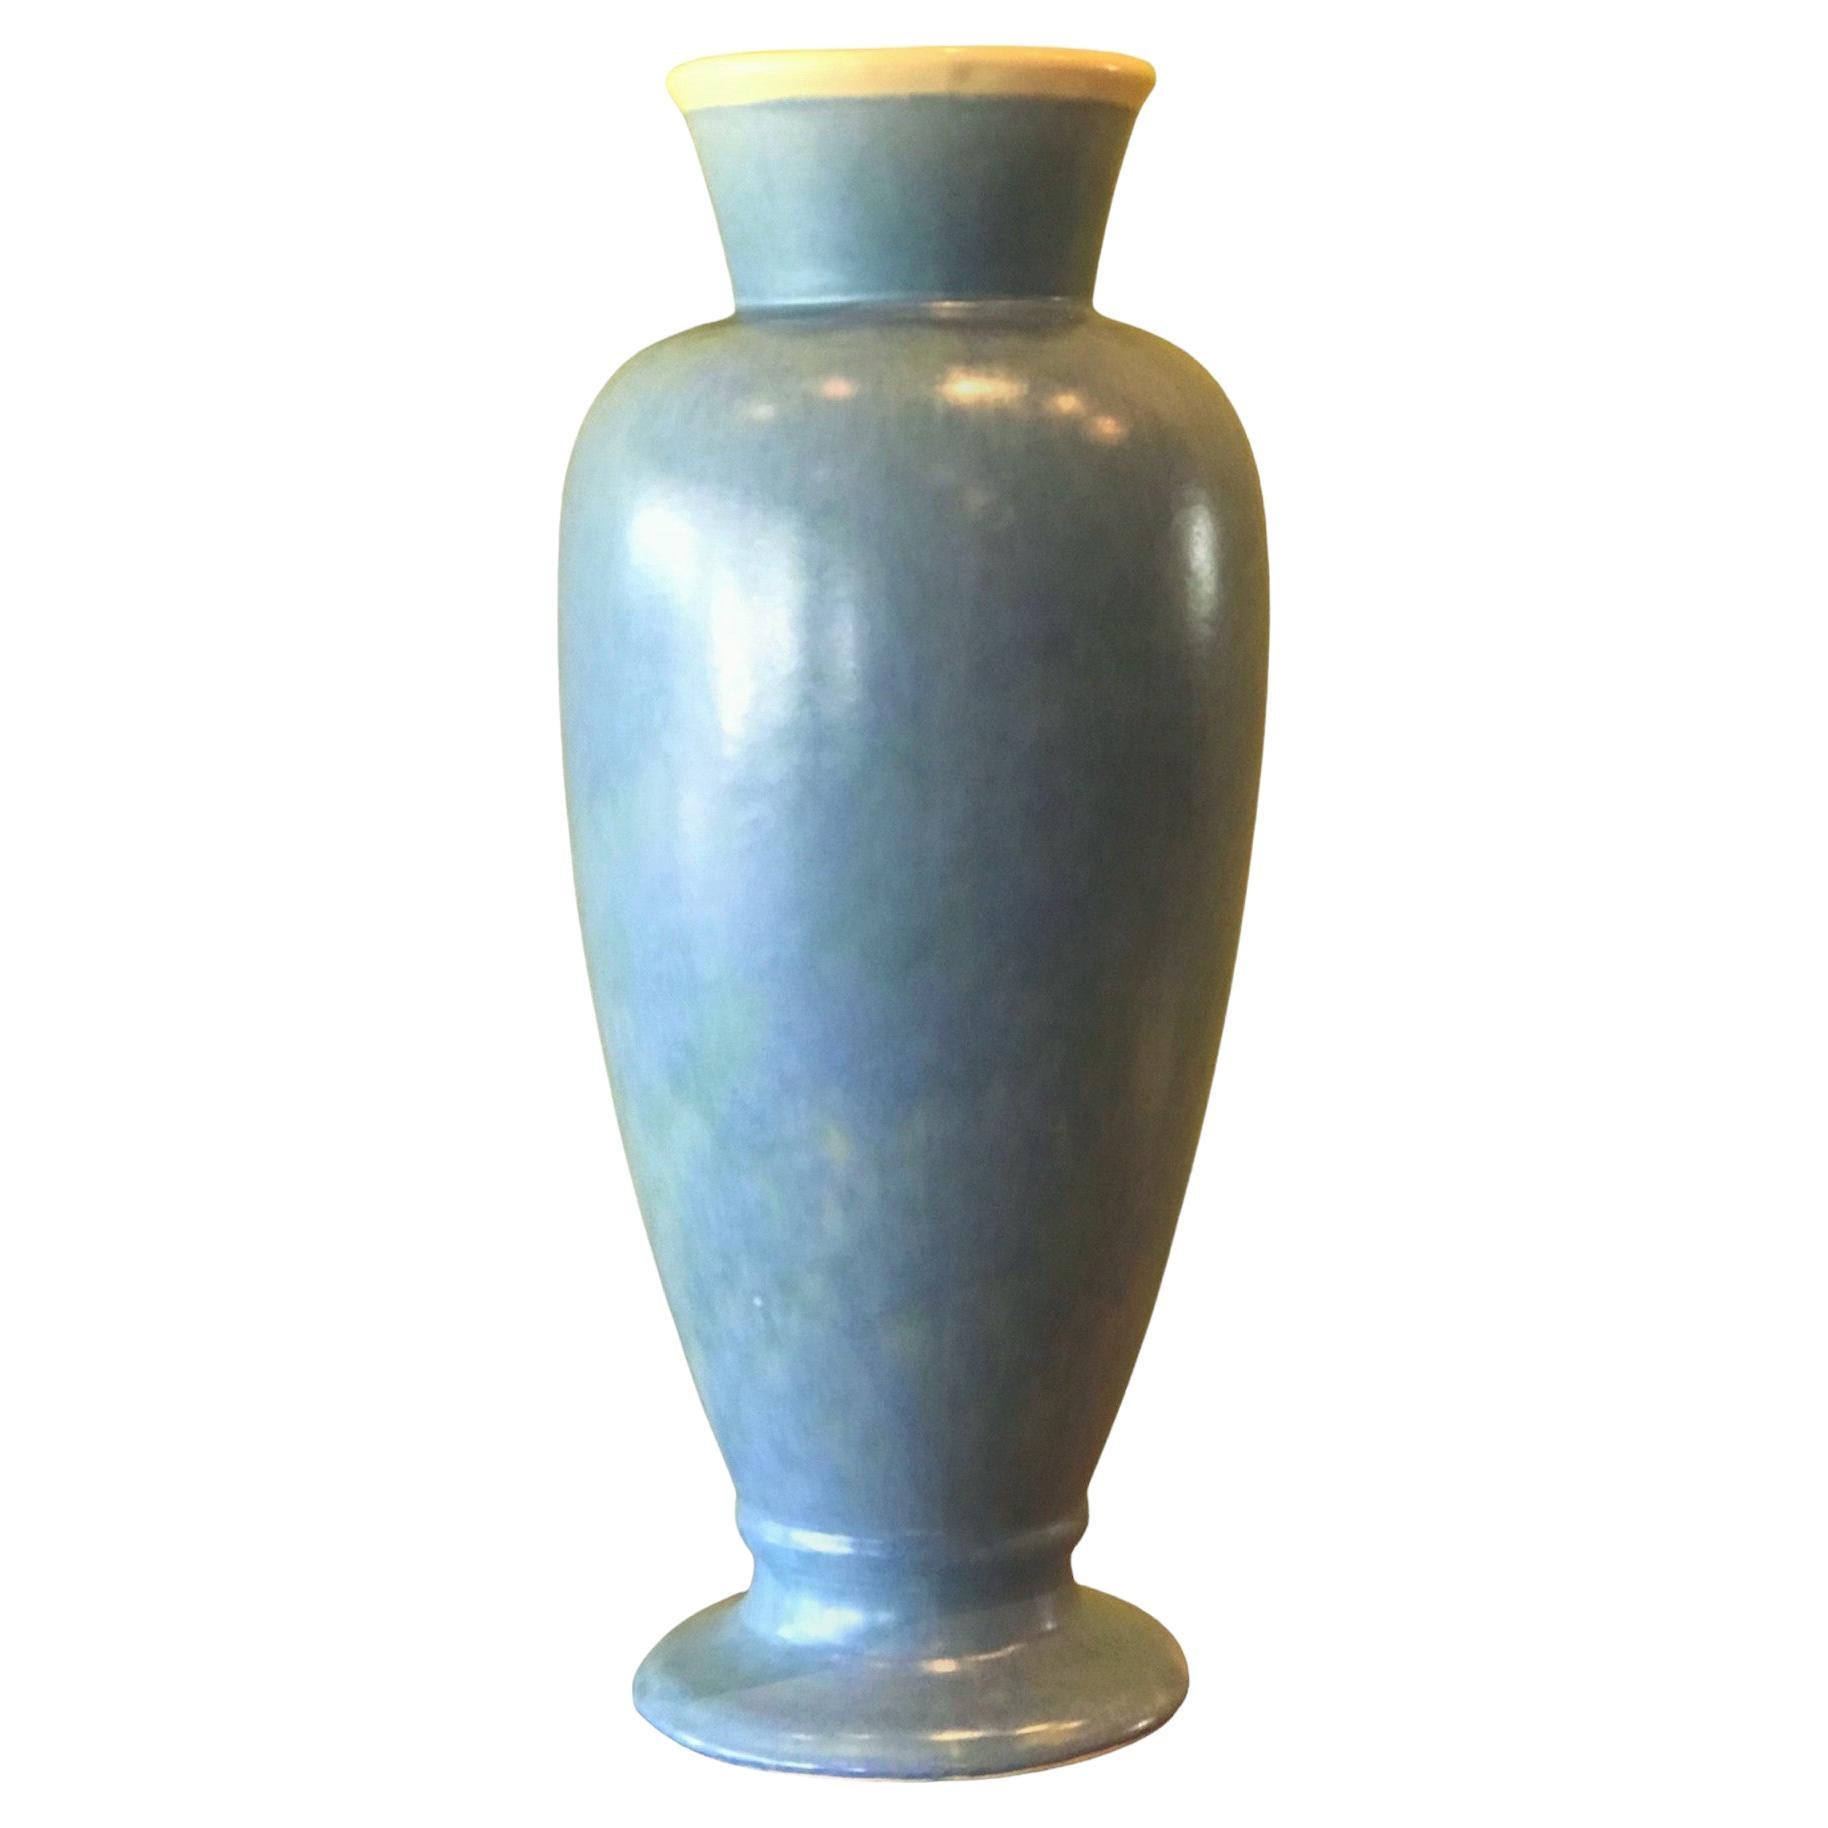 Großformatige Keramikvase von Weller Pottery aus den 1920er Jahren mit einer selten gesehenen Form. Außen in Himmelblau und innen in zartem Weiß. Signiert mit dem Schriftzug Weller aus den 1920er Jahren. In sehr gutem Condit.  Geringfügige